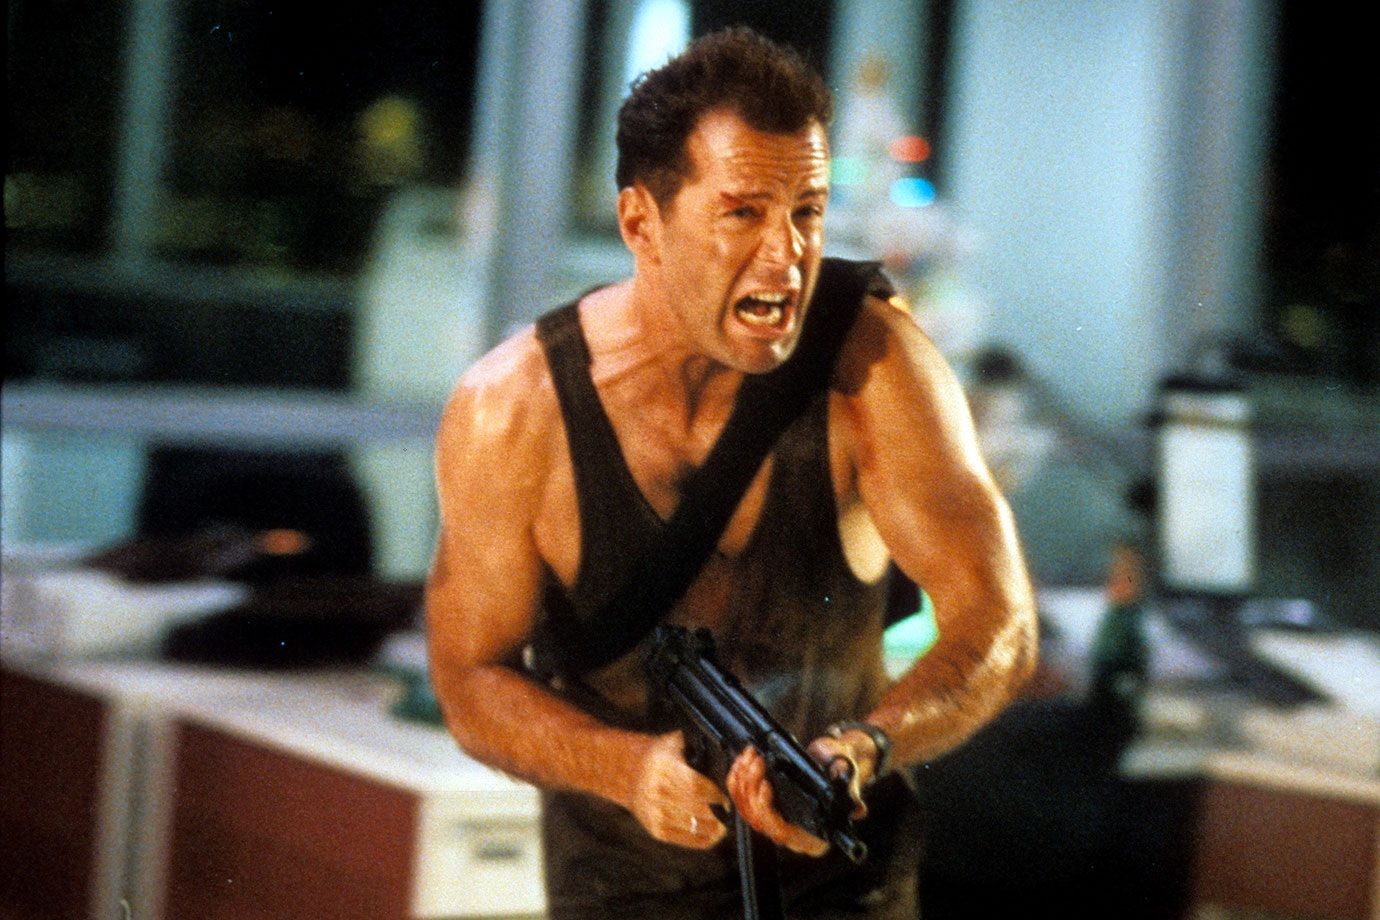 Bruce Willis shooting a gun in Die Hard.